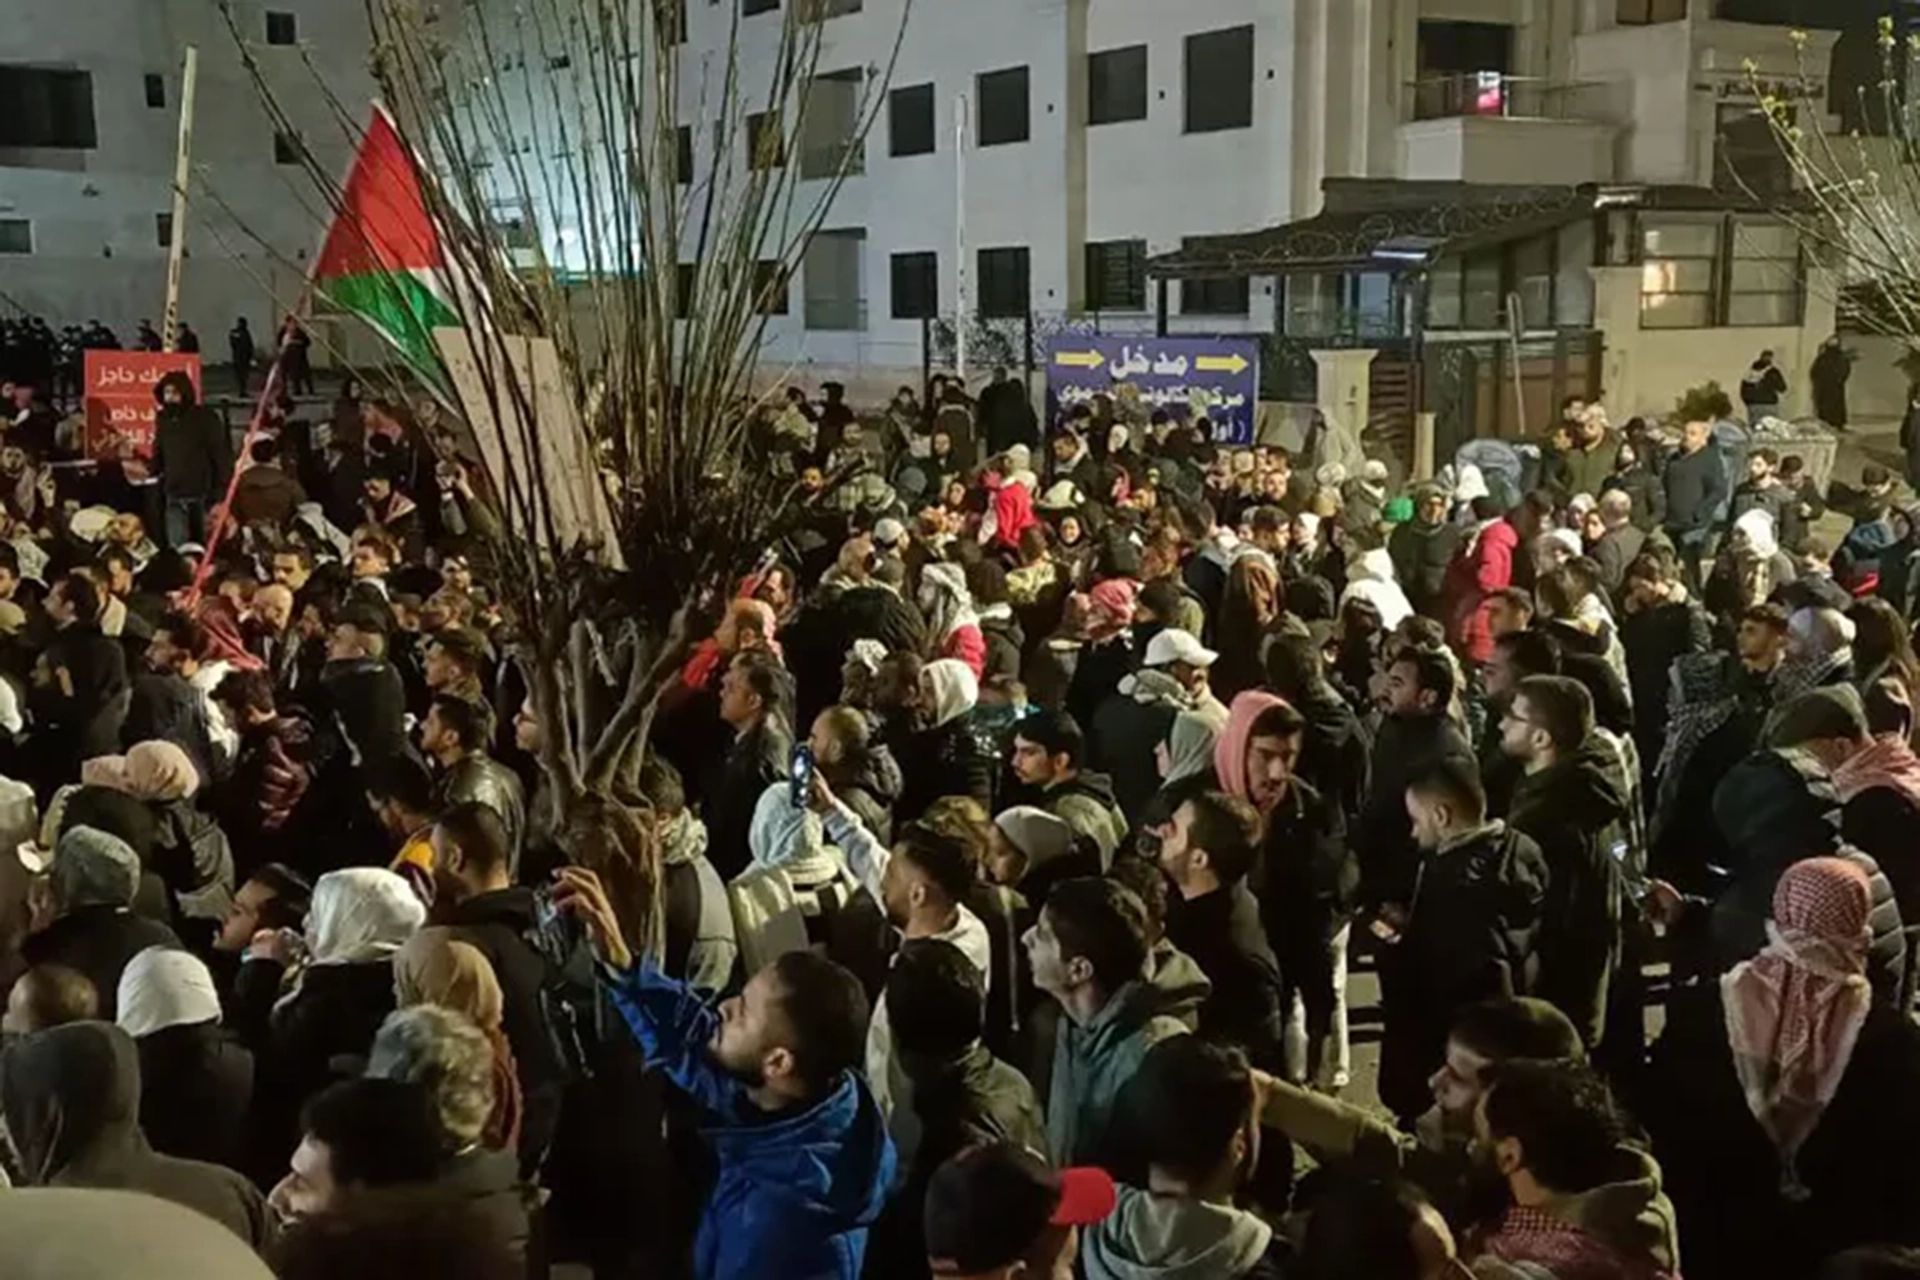 من يقف خلف شيطنة الحراك الأردني قرب السفارة الإسرائيلية؟ | سياسة – البوكس نيوز